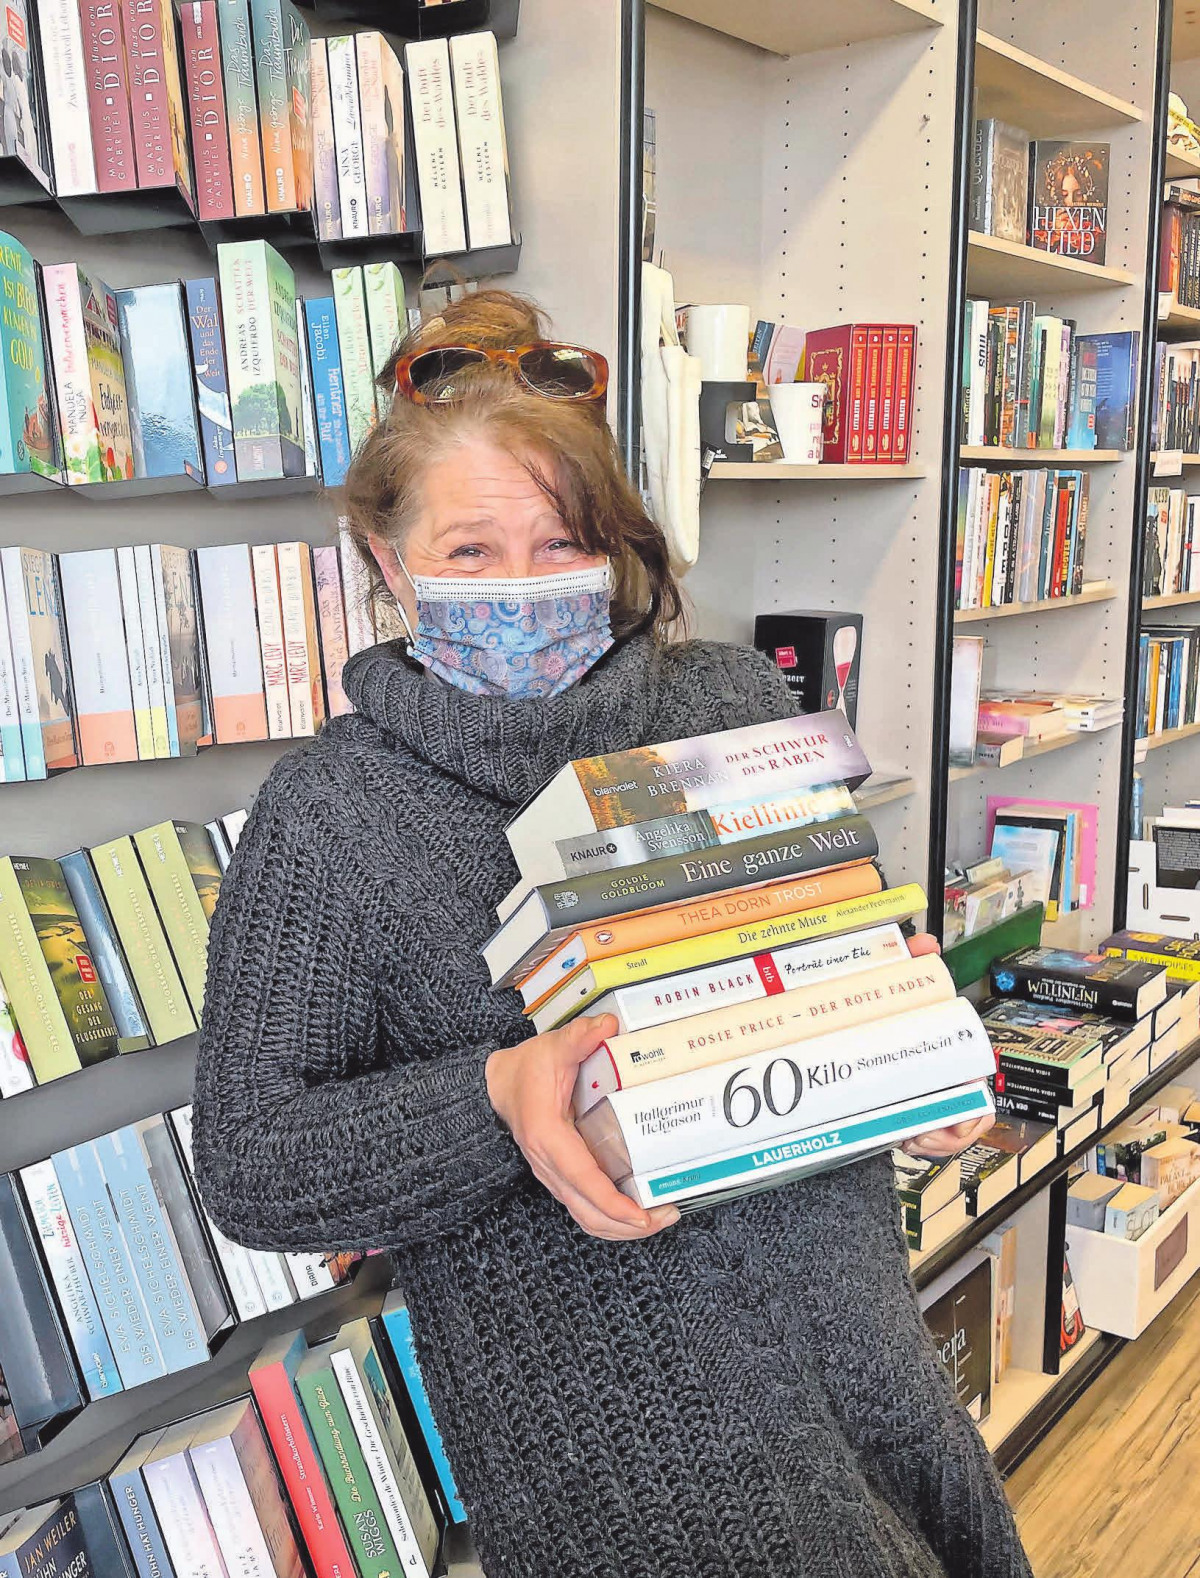 Juliane Hagenström von der Buchhandlung Bücherliebe freut sich darüber, endlich wieder persönlich mit ihren Kunden über Bücher plaudern zu können. Foto: Buchhandlung Bücherliebe